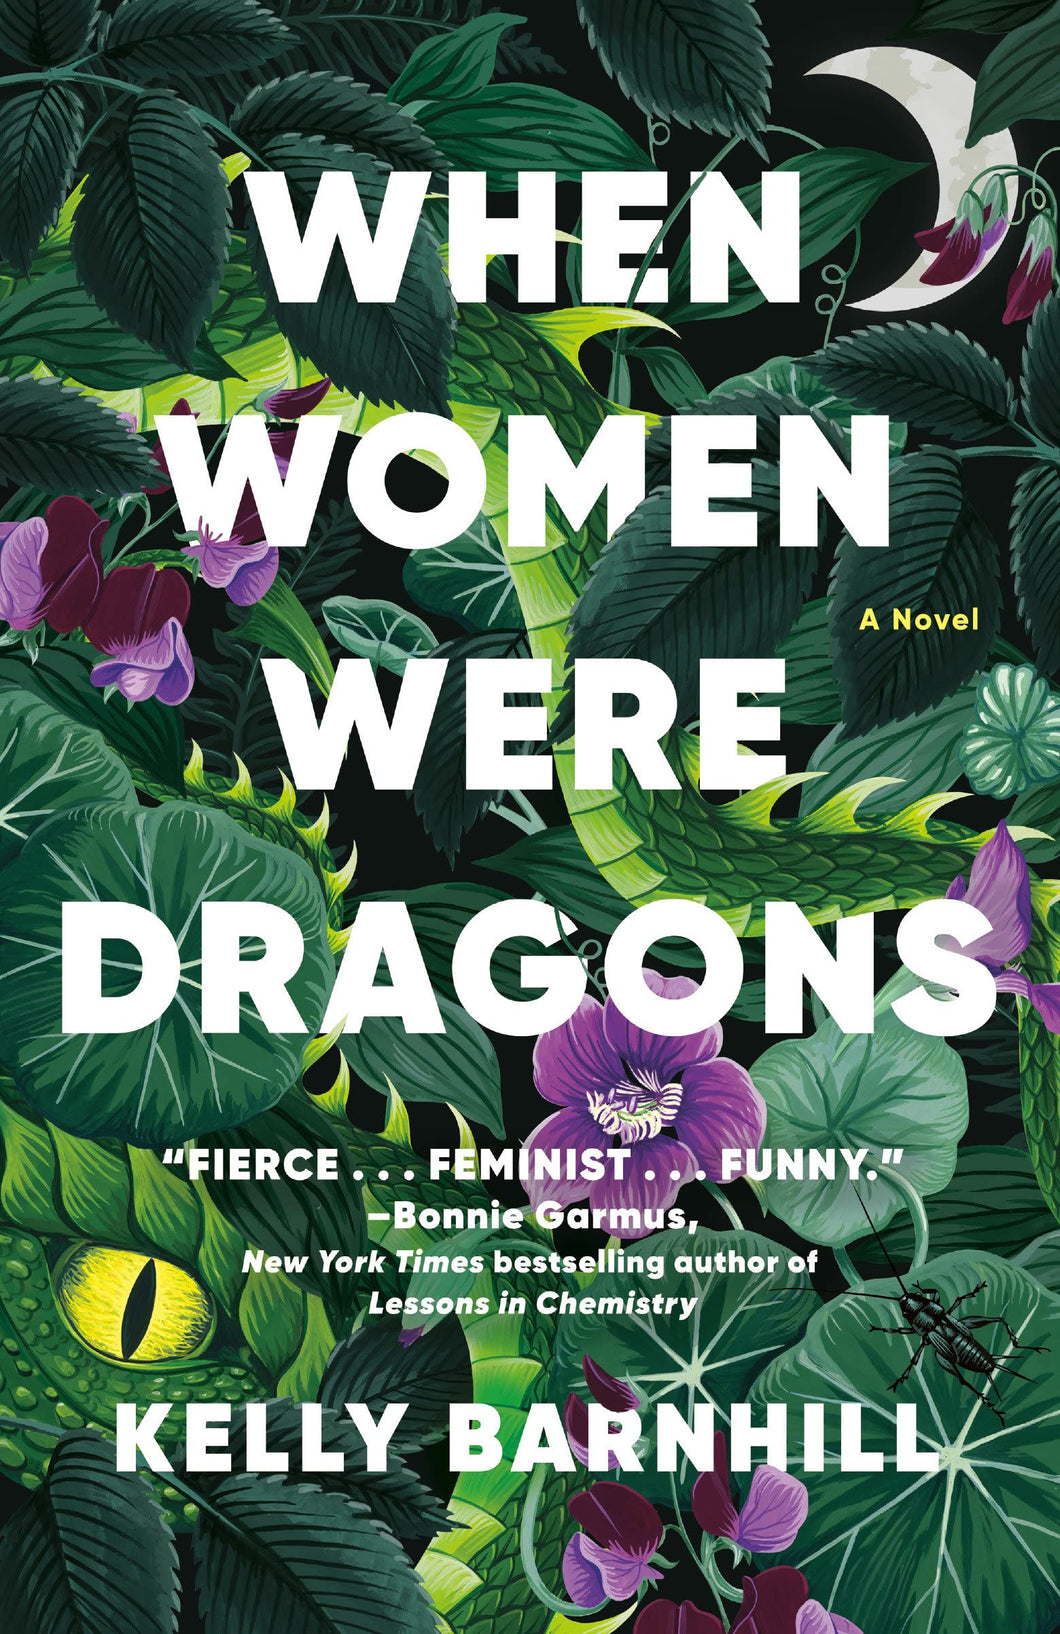 When Women Were Dragons [Kelly Barnhill]